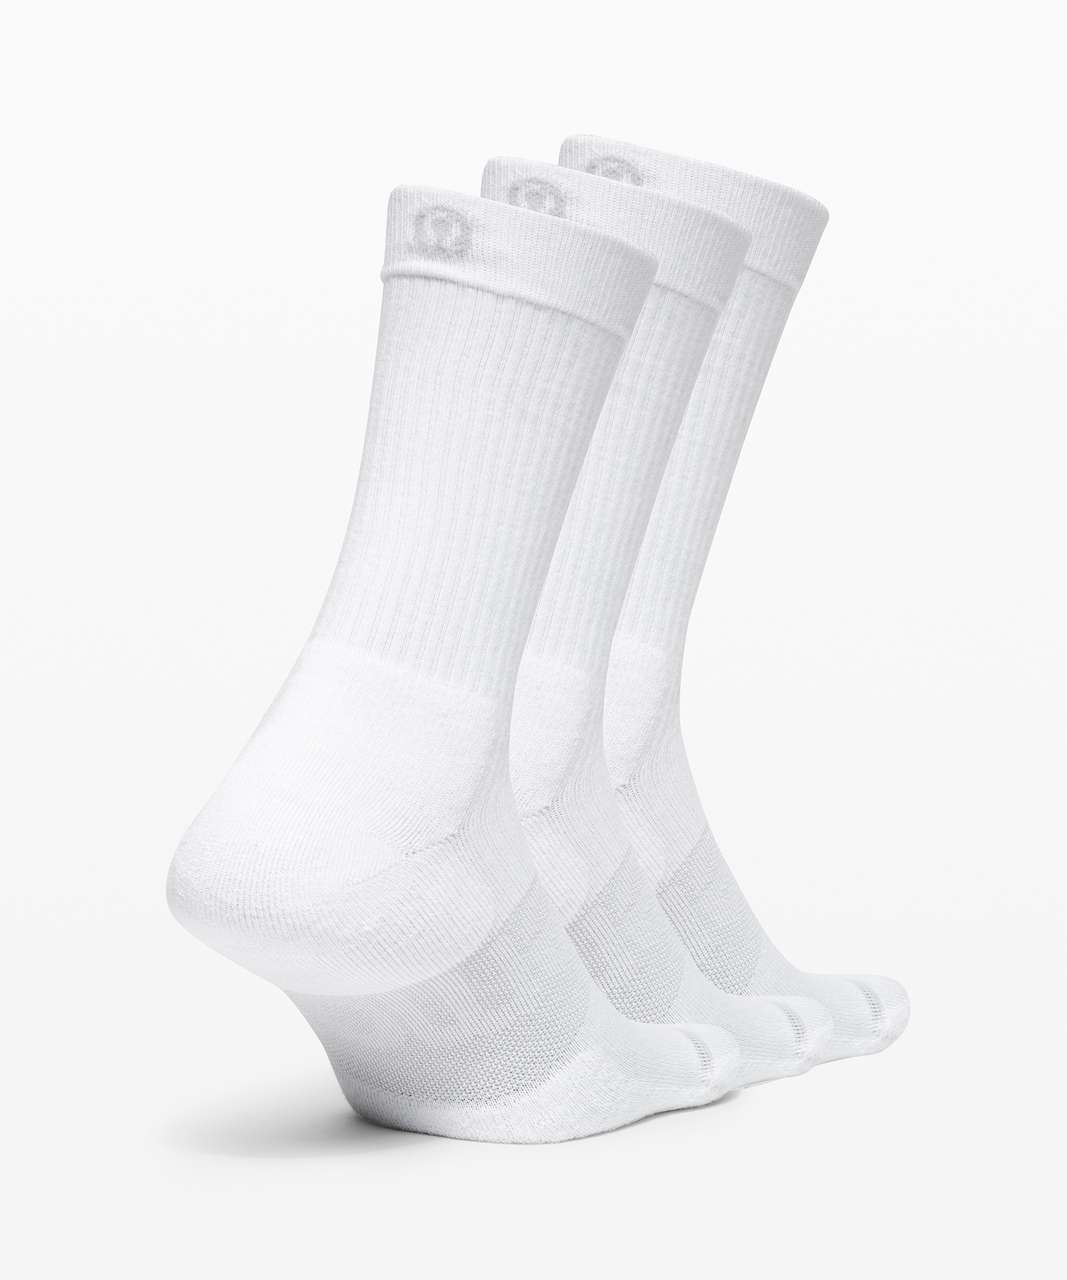 Lululemon Daily Stride Crew Sock *3 Pack - White